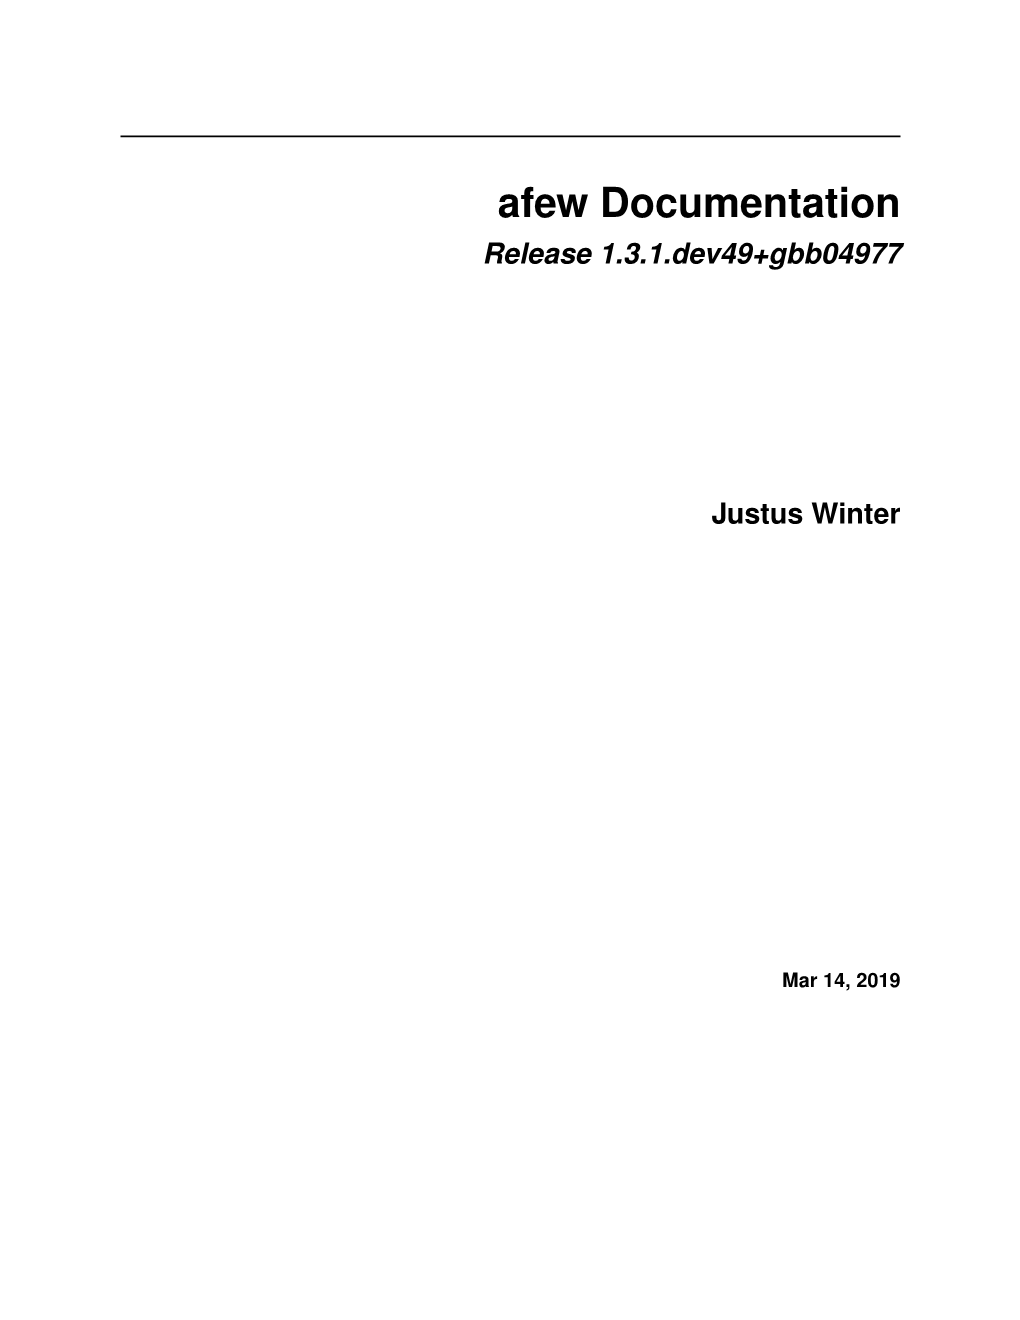 Afew Documentation Release 1.3.1.Dev49+Gbb04977